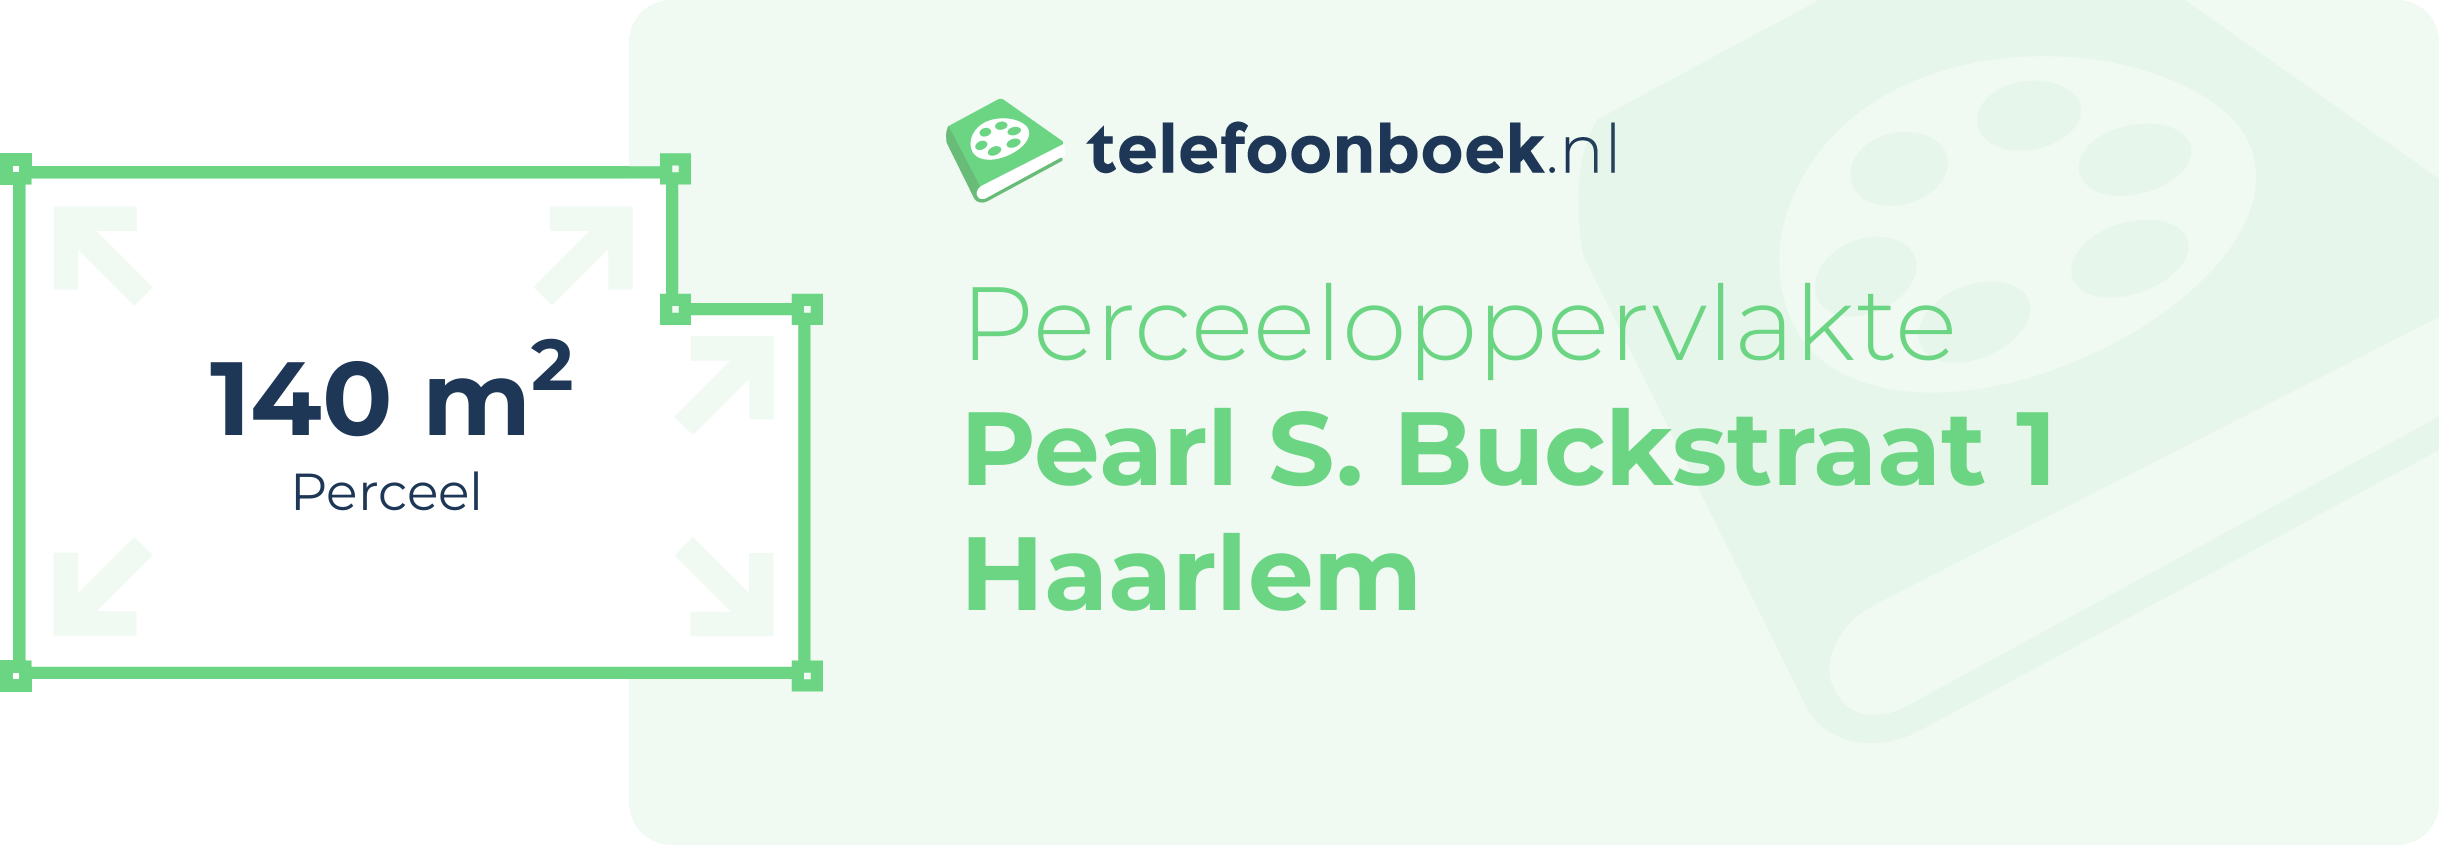 Perceeloppervlakte Pearl S. Buckstraat 1 Haarlem